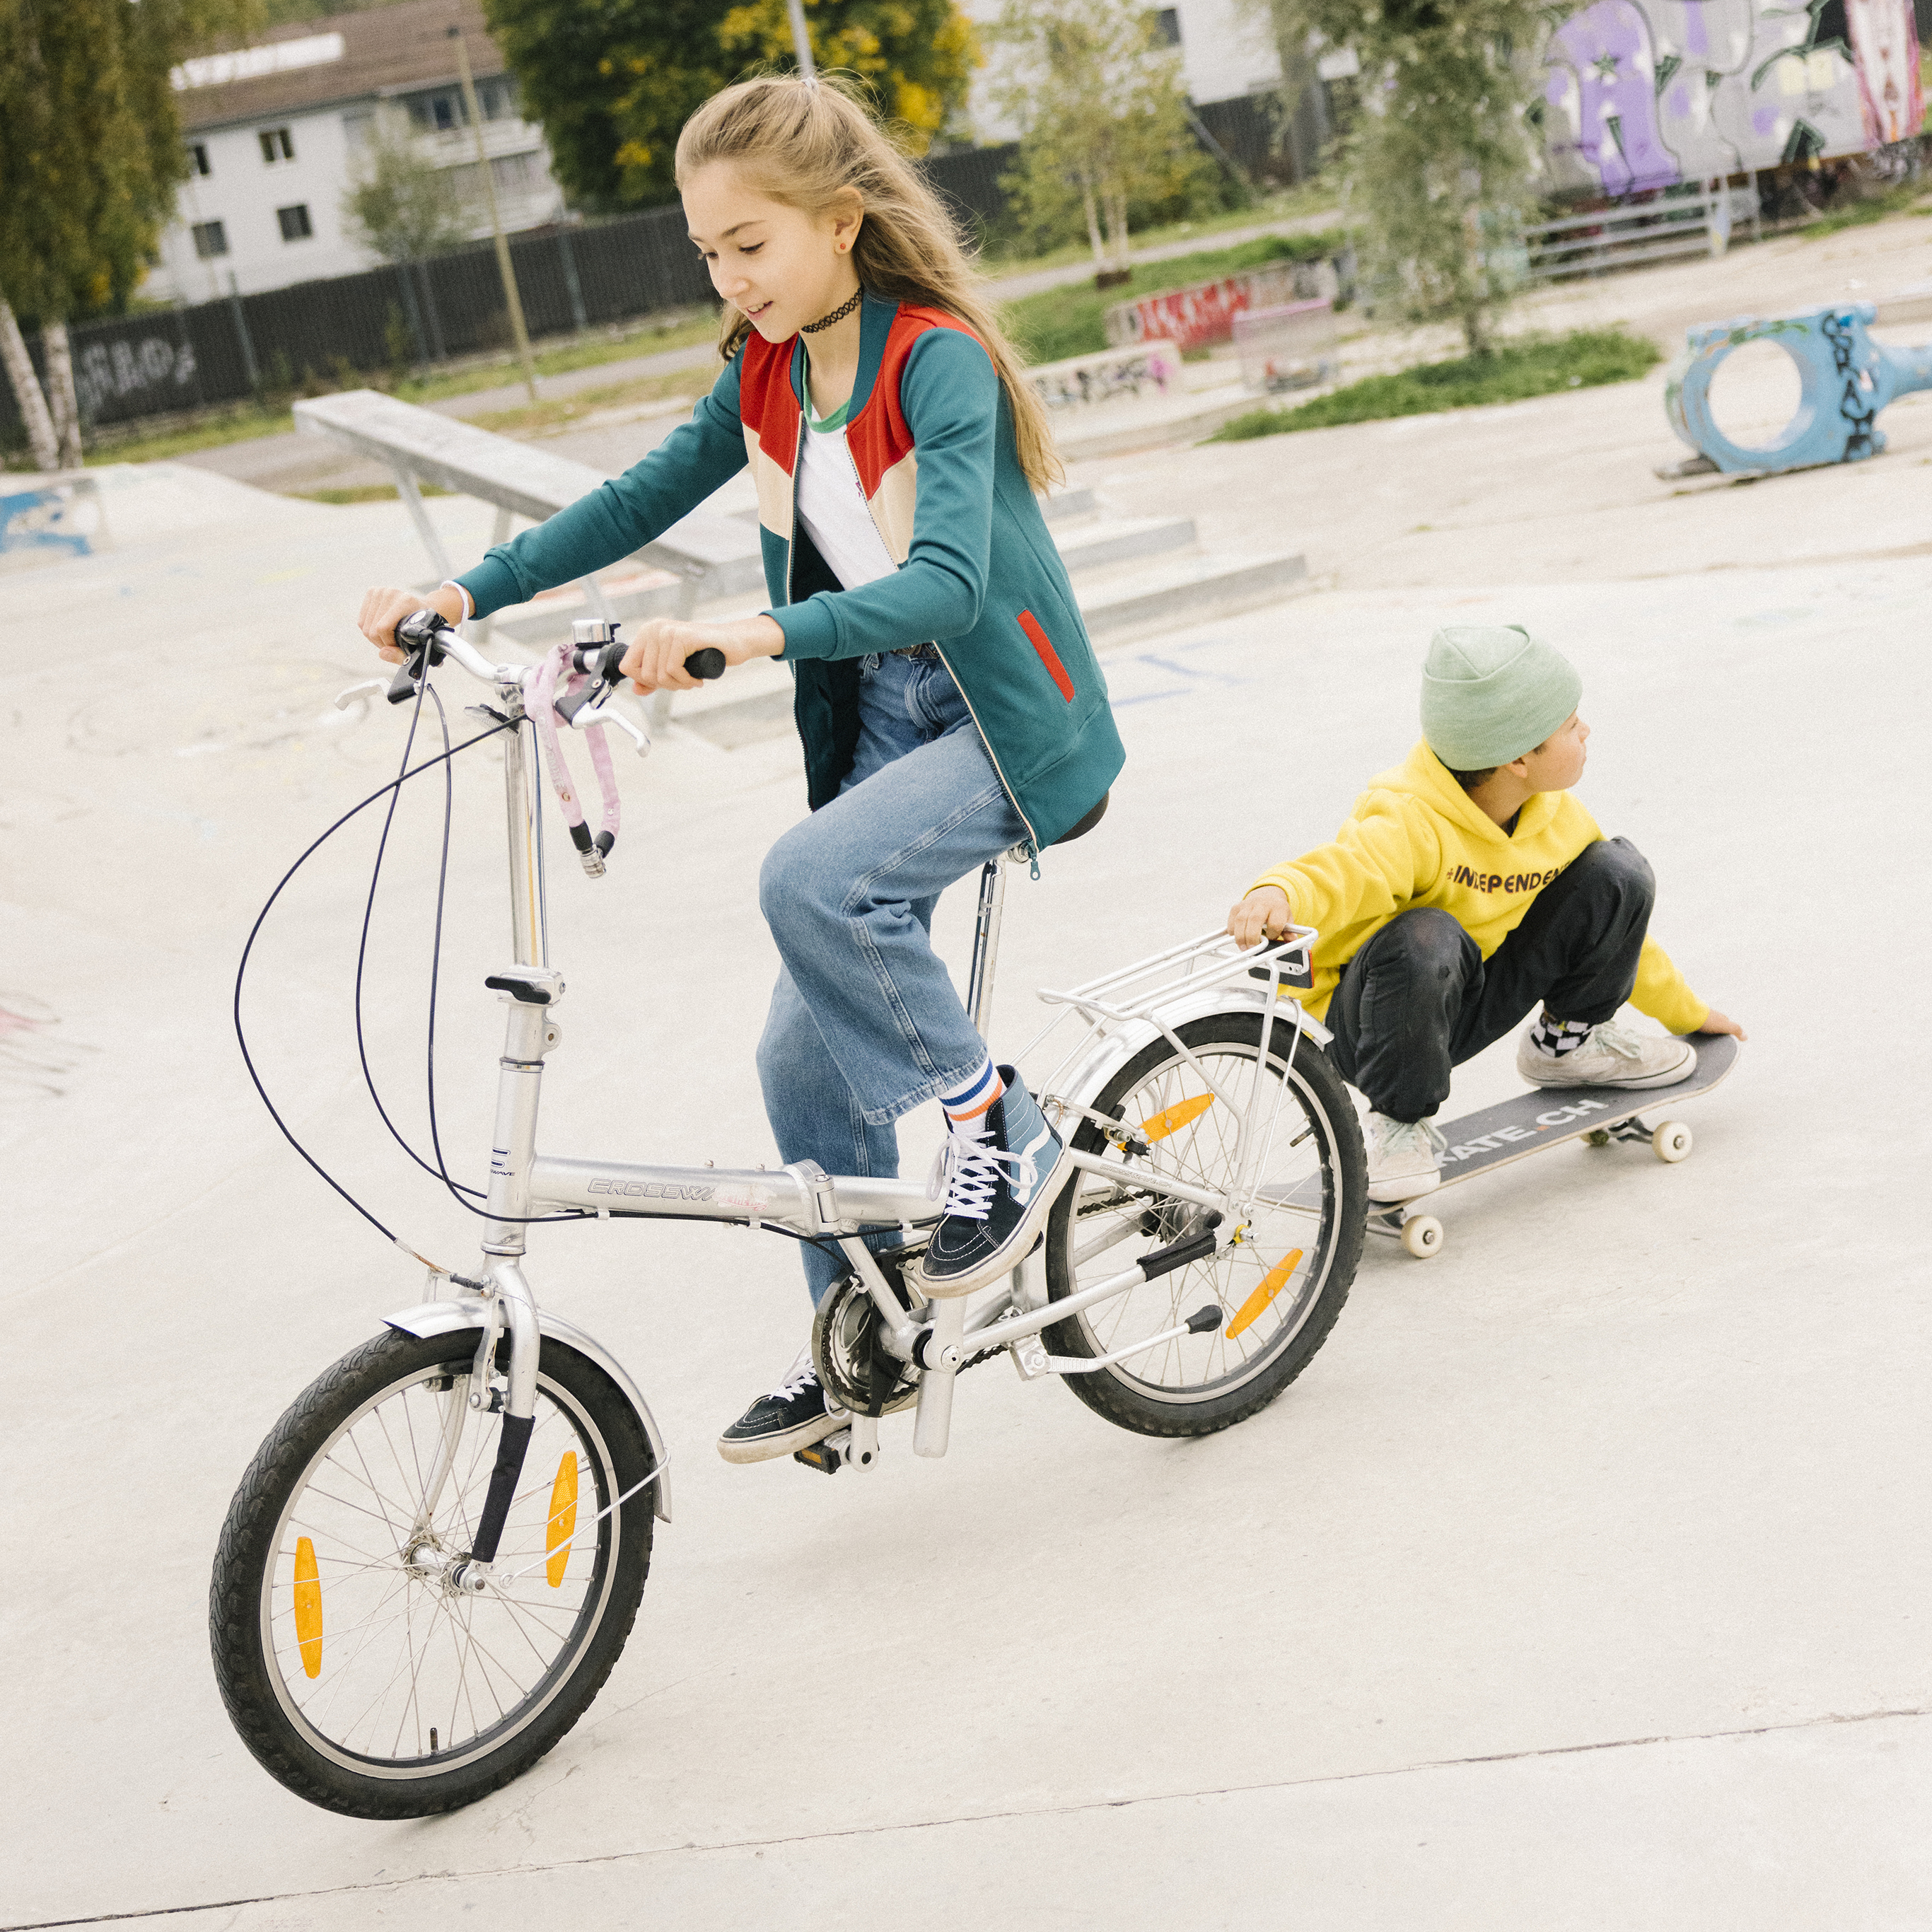 Eine Jugendliche fährt auf ihrem Fahrrad, dabei hält sich ein Jugendlicher auf seinem Skateboard kauernd am Gepäckträger fest und blickt nach hinten.